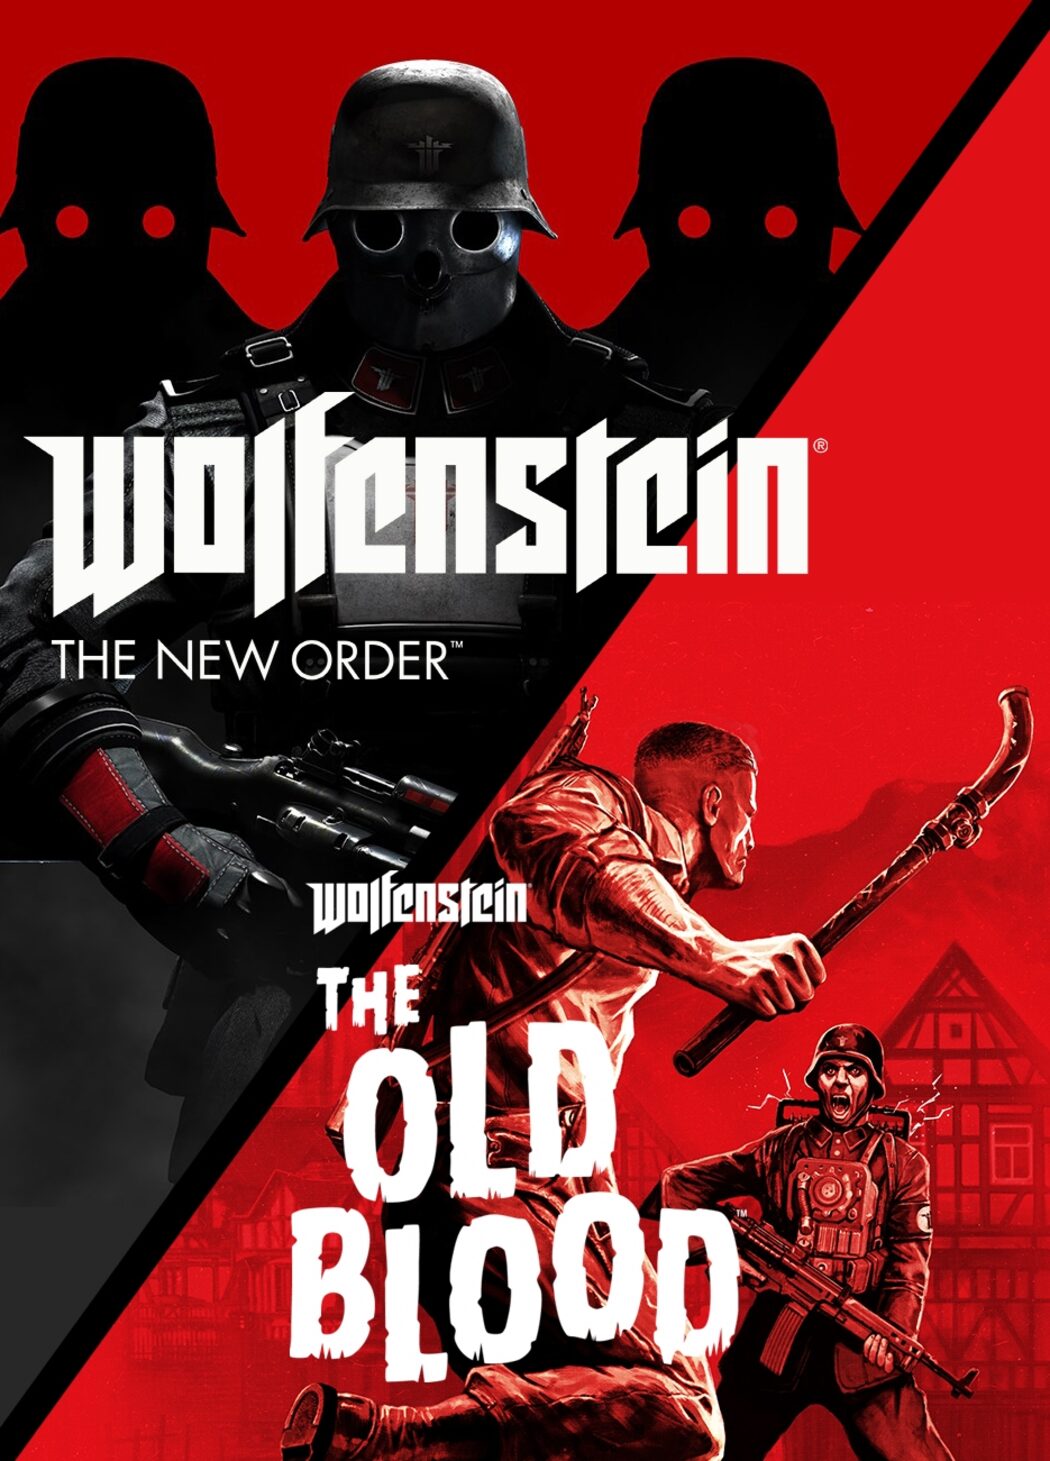 Buy Wolfenstein II: The New Colossus Steam